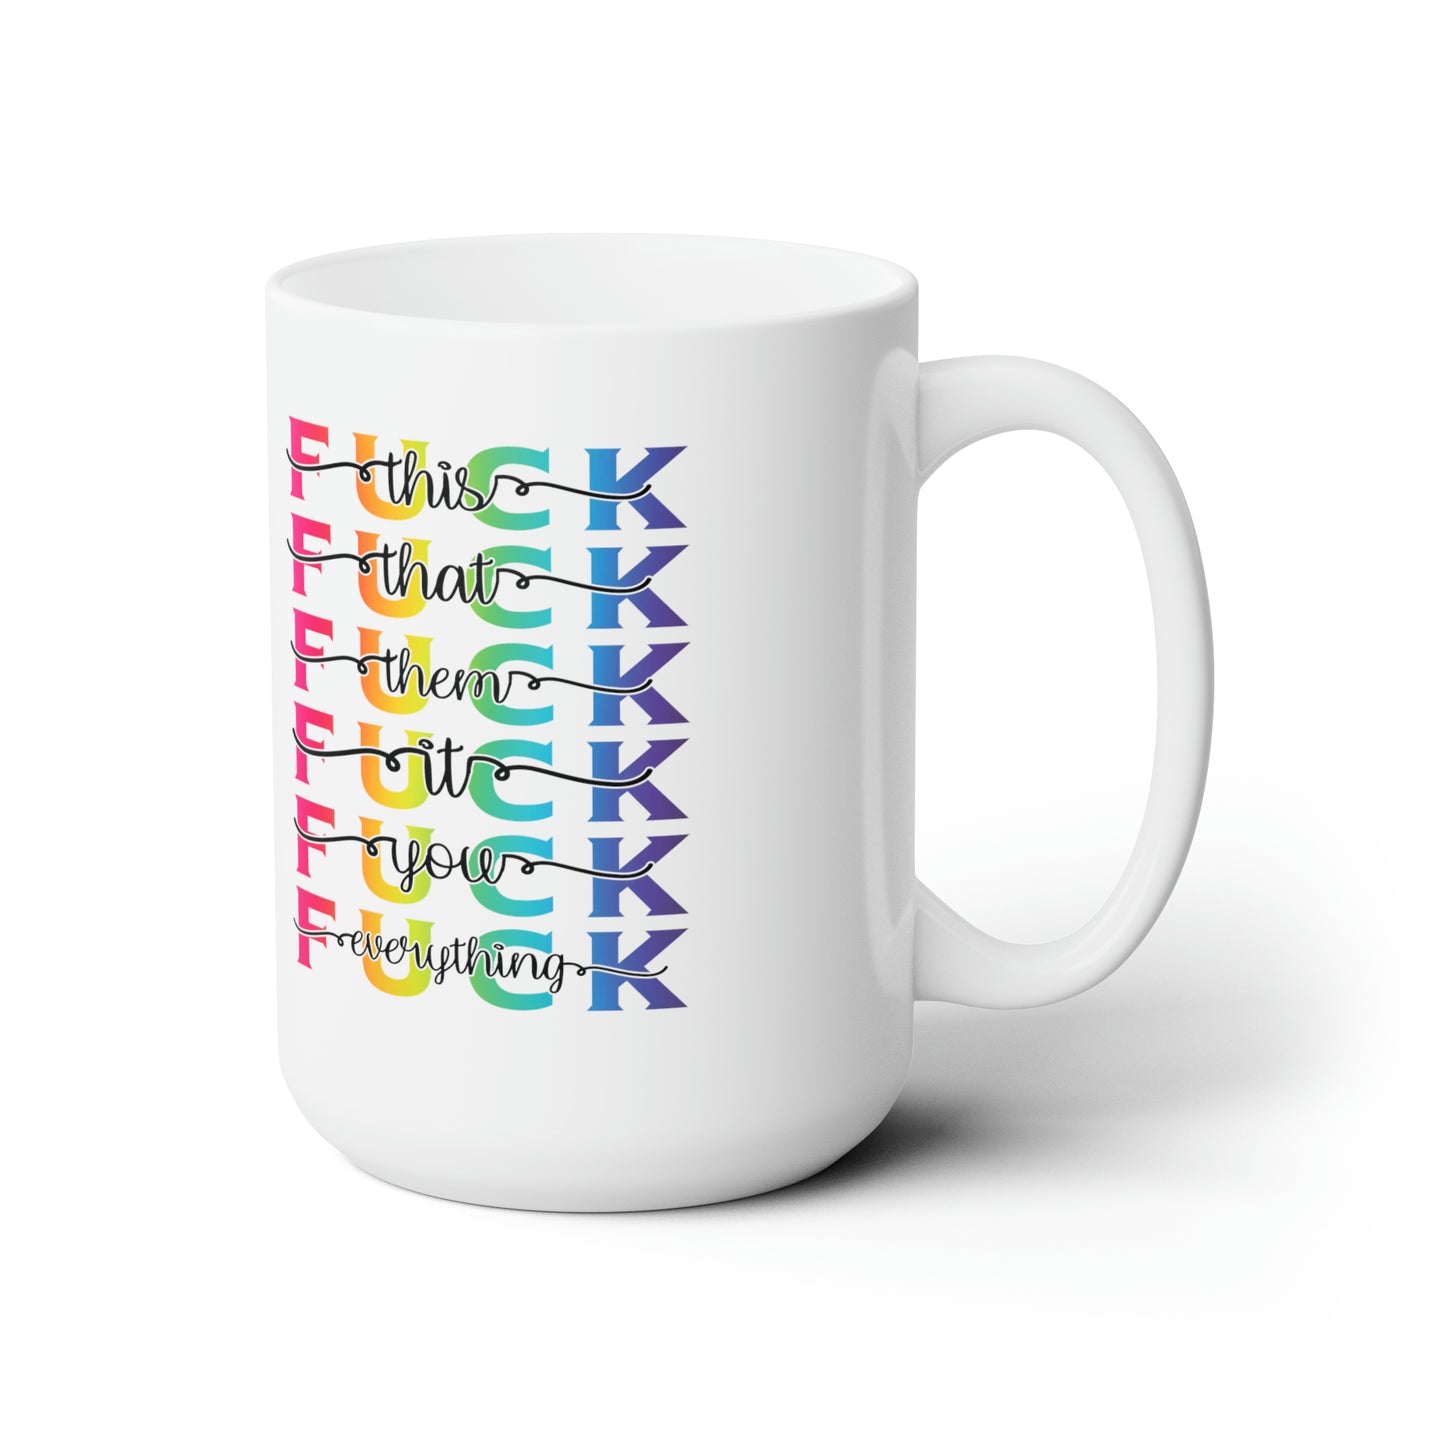 F**K This & That Ceramic Mug